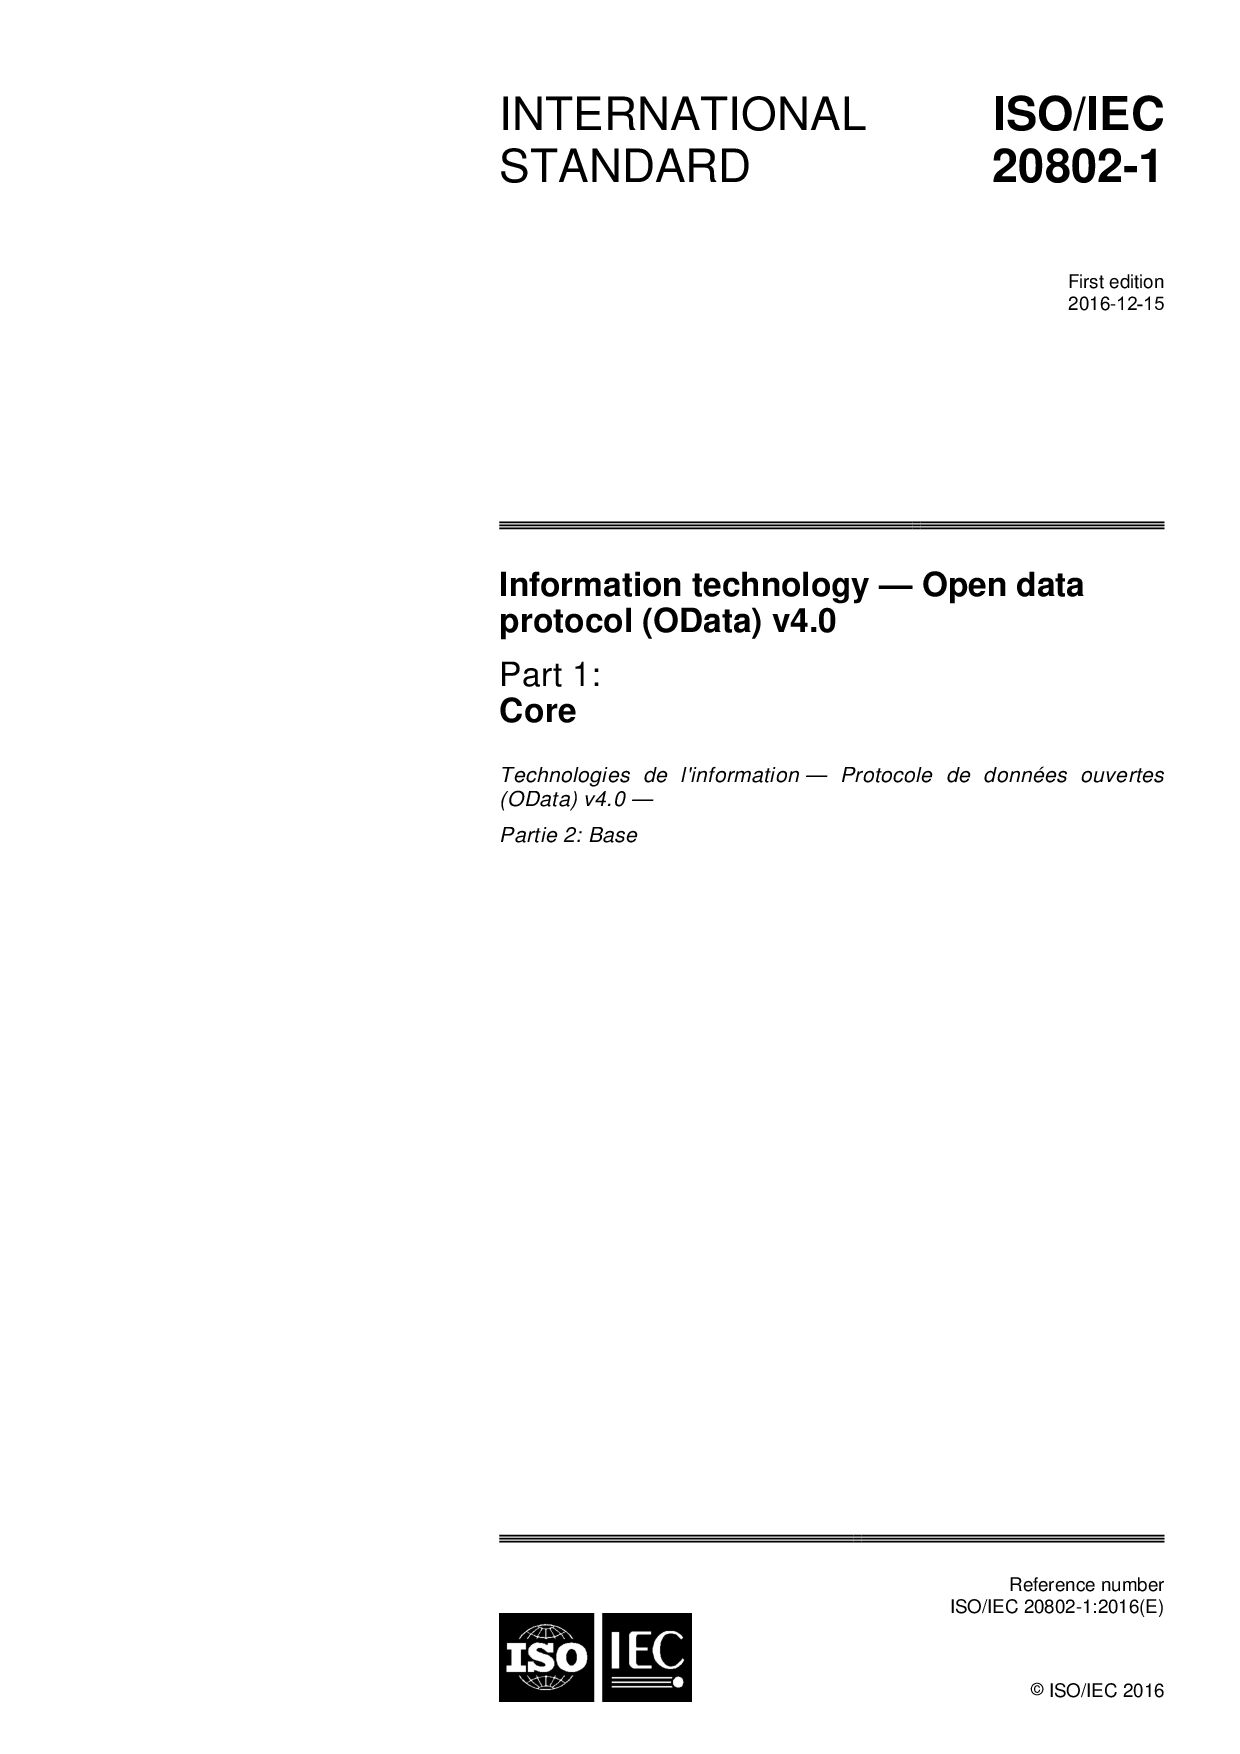 ISO/IEC 20802-1:2016封面图